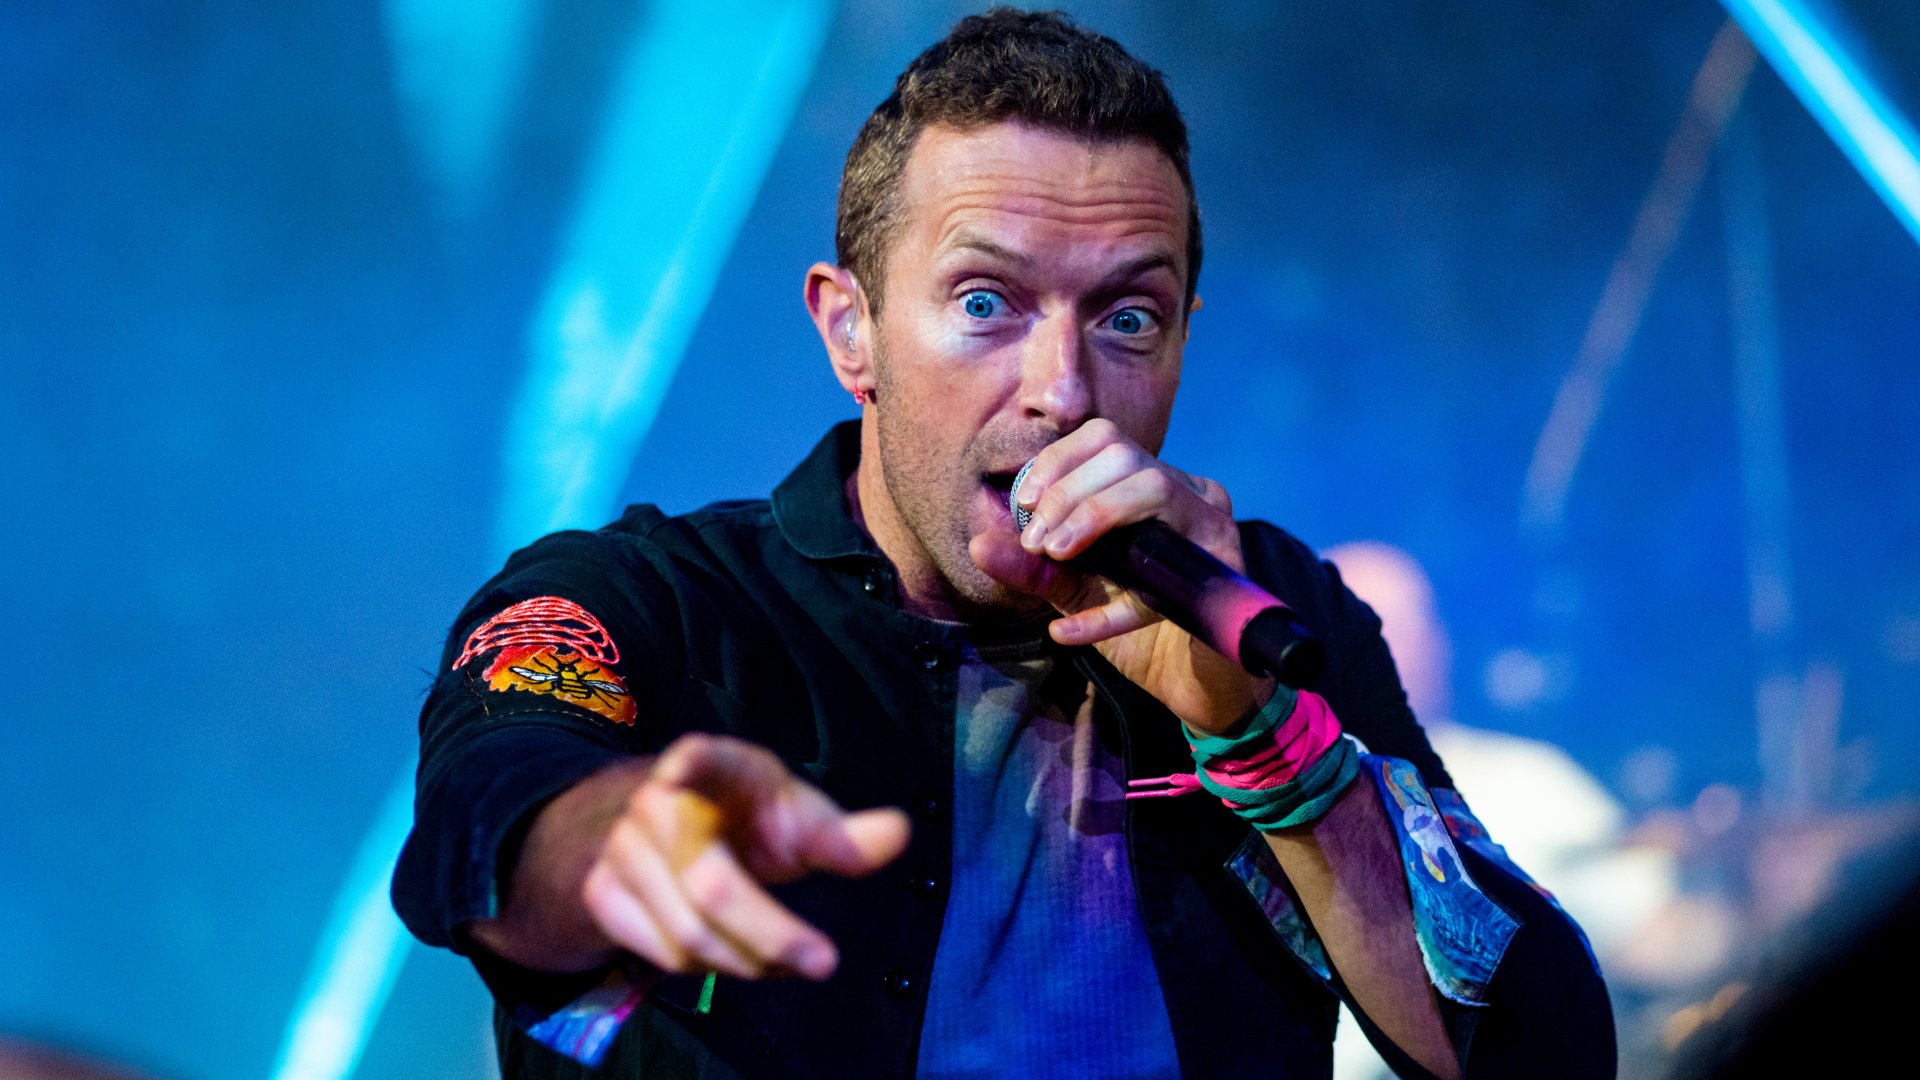 Concert de Coldplay a Barcelona: 10 dades increïbles que et faran desitjar veure'ls en directe